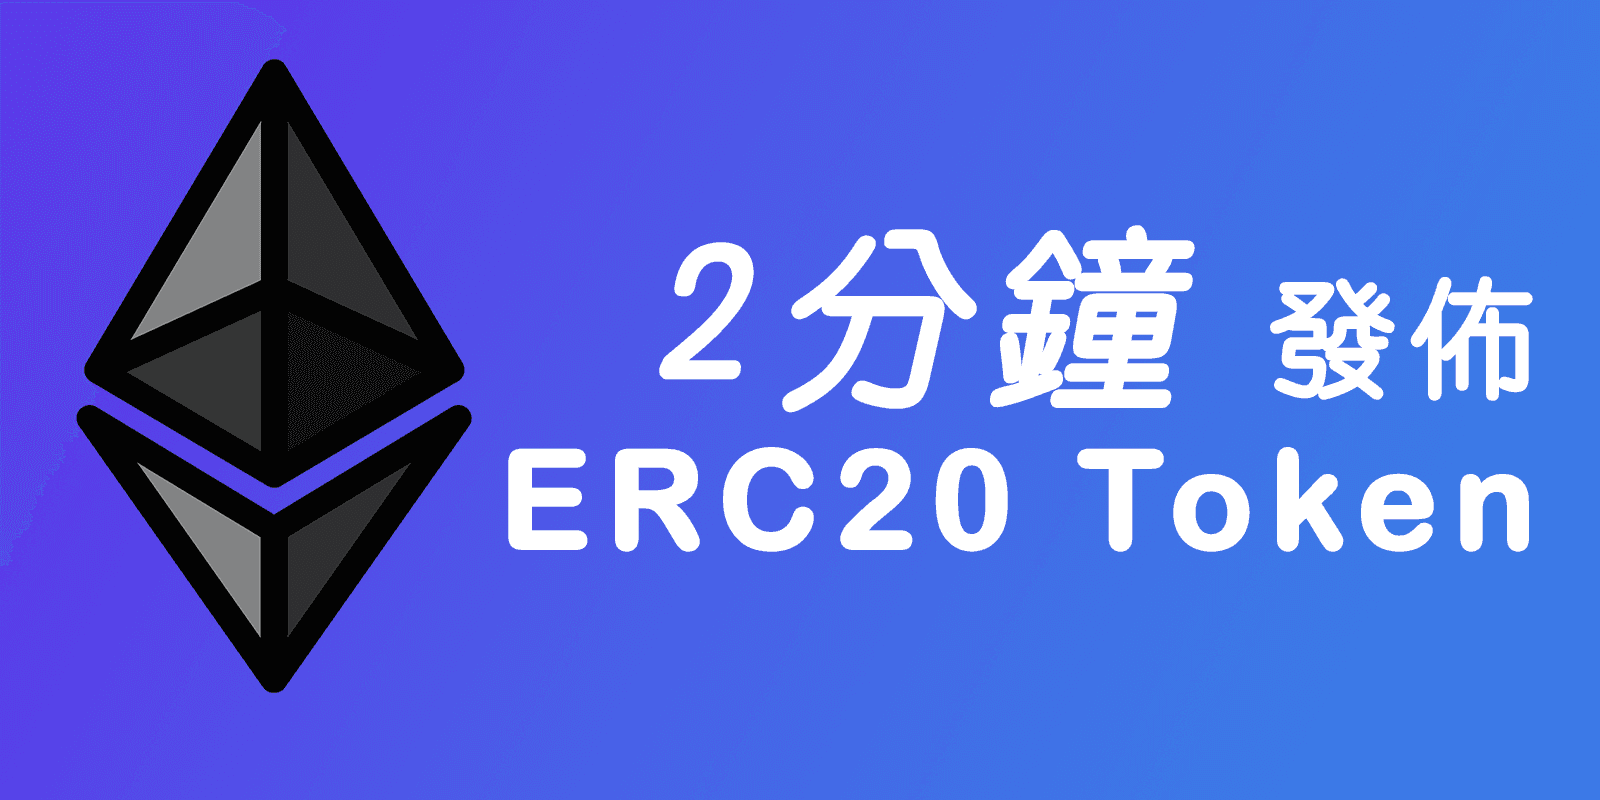 2 分鐘建立你自己的 ERC20 Token